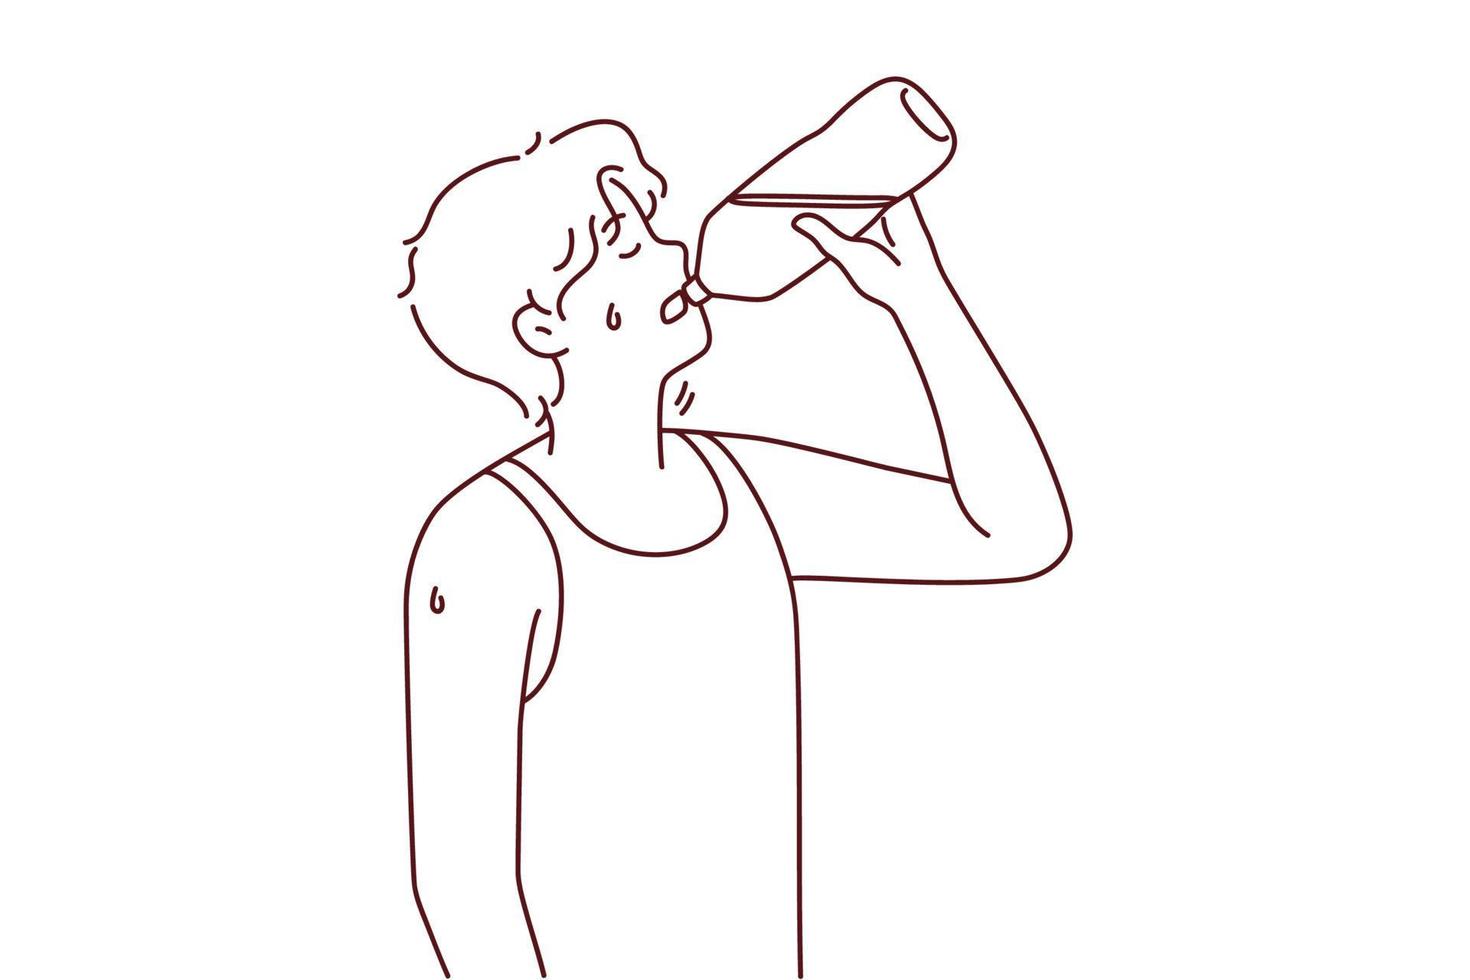 un jeune homme assoiffé souffre d'un coup de chaleur en buvant de l'eau en bouteille. le gars apprécie la lutte liquide et propre contre la soif ou la chaleur. illustration vectorielle. vecteur